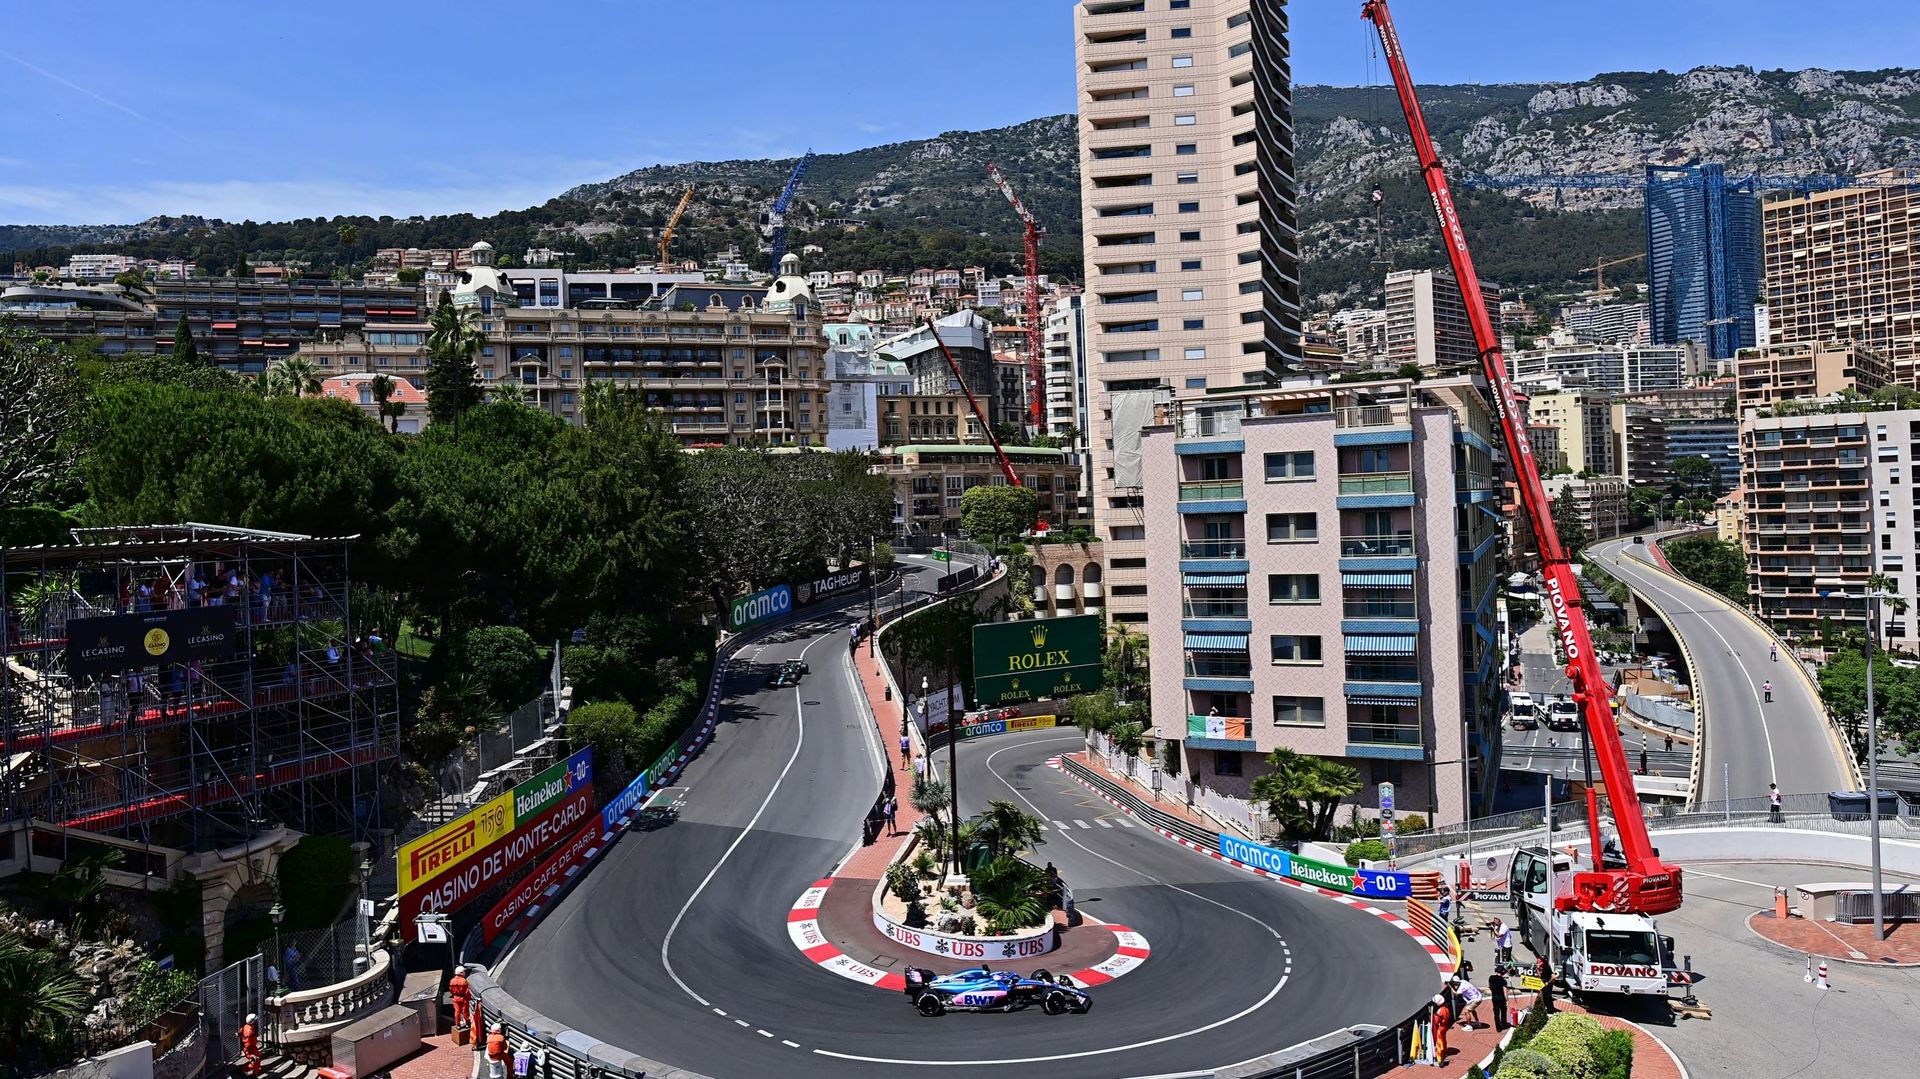 L'avenir du Grand Prix de Monaco est incertain. Mais qu'en pensent les pilotes ?